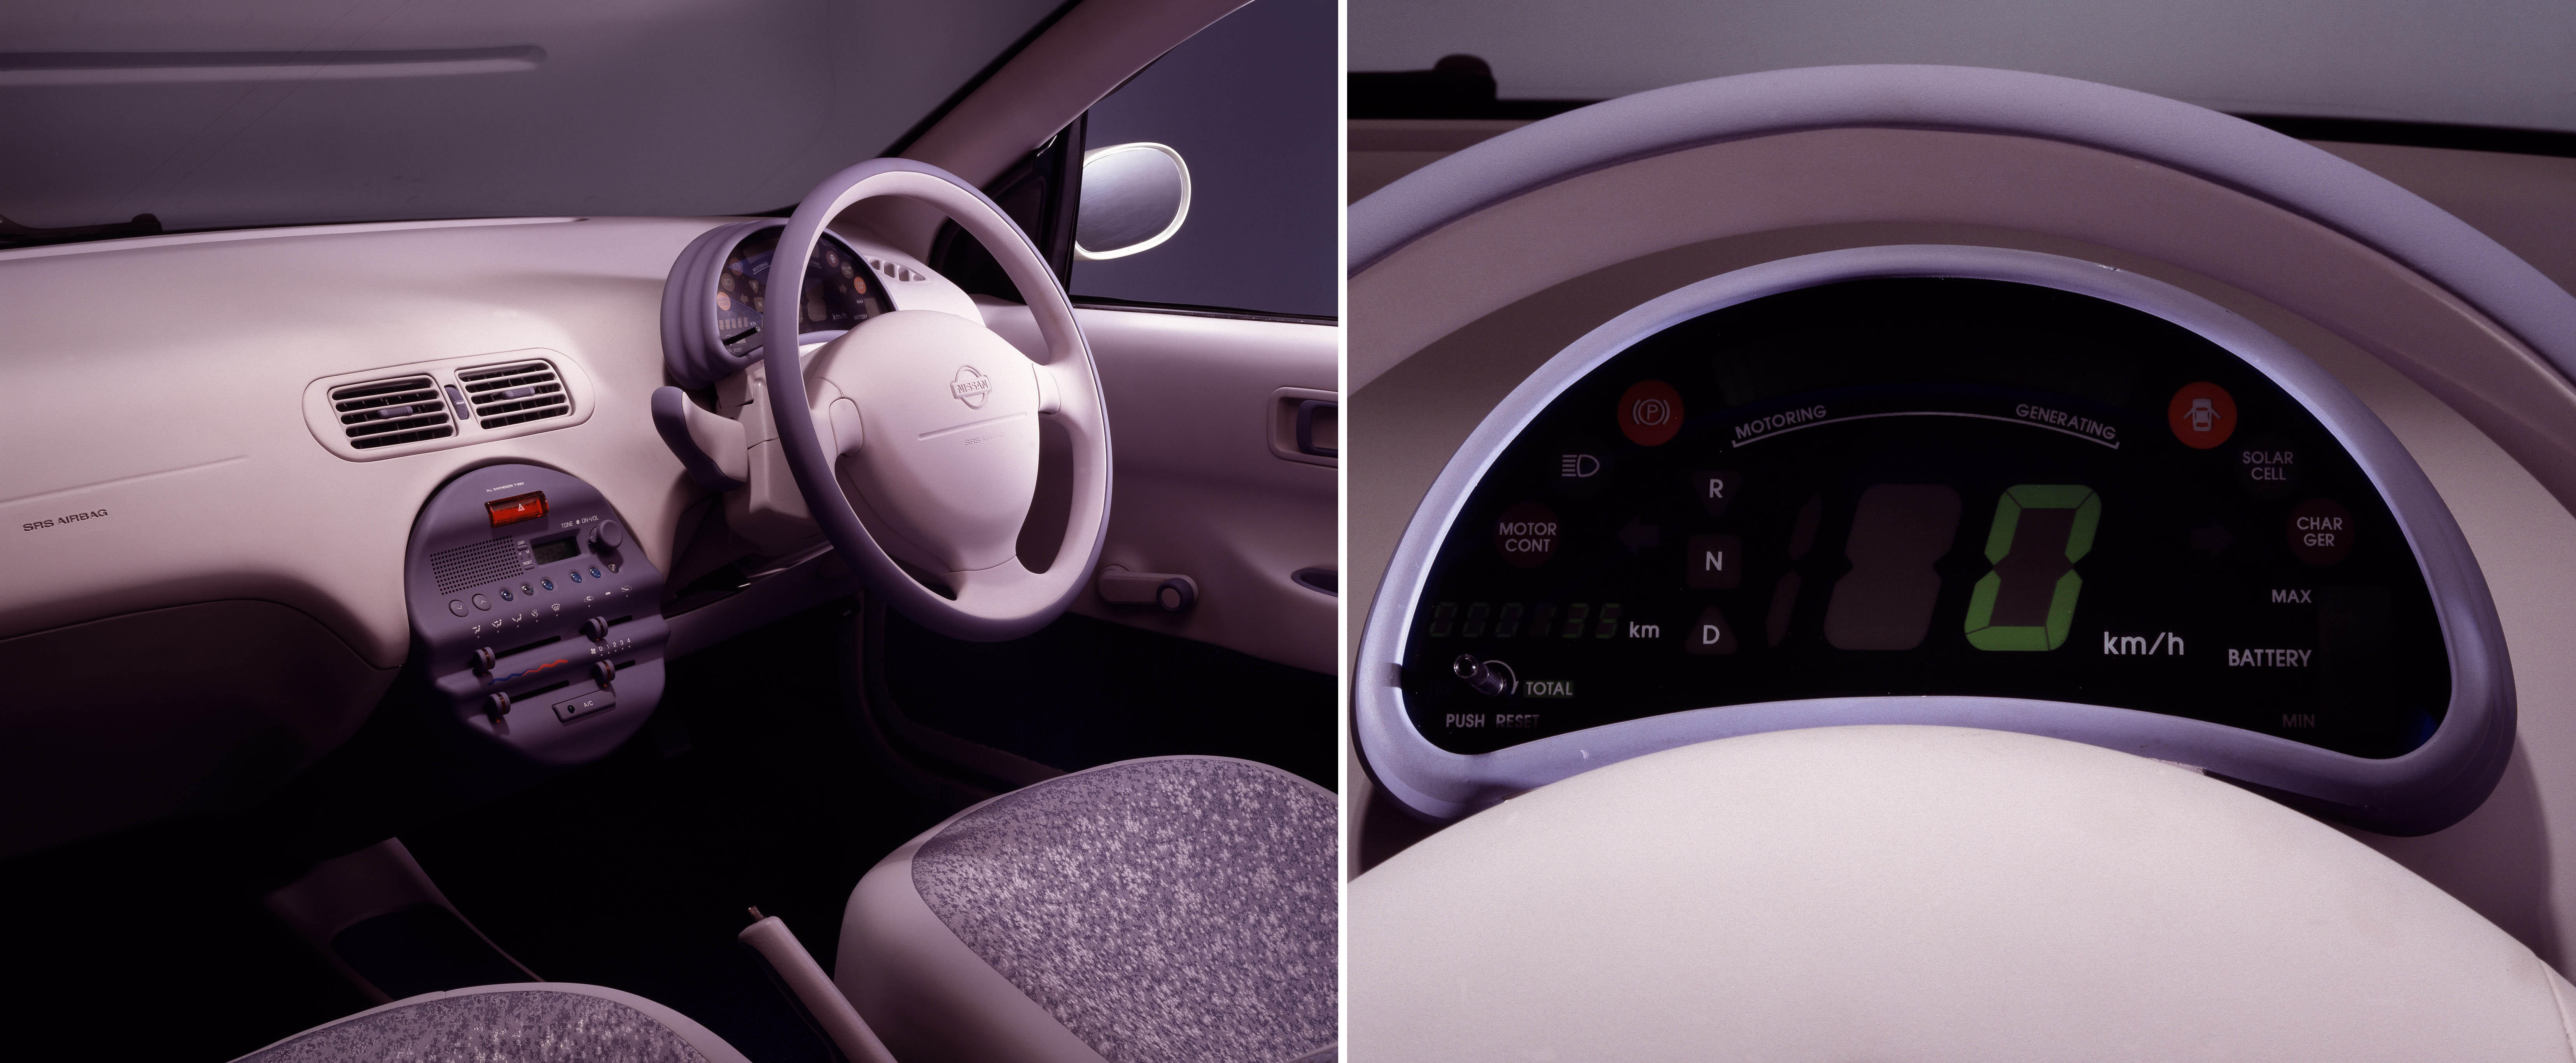 Nissan FEV coche electrico prototipo-interior2